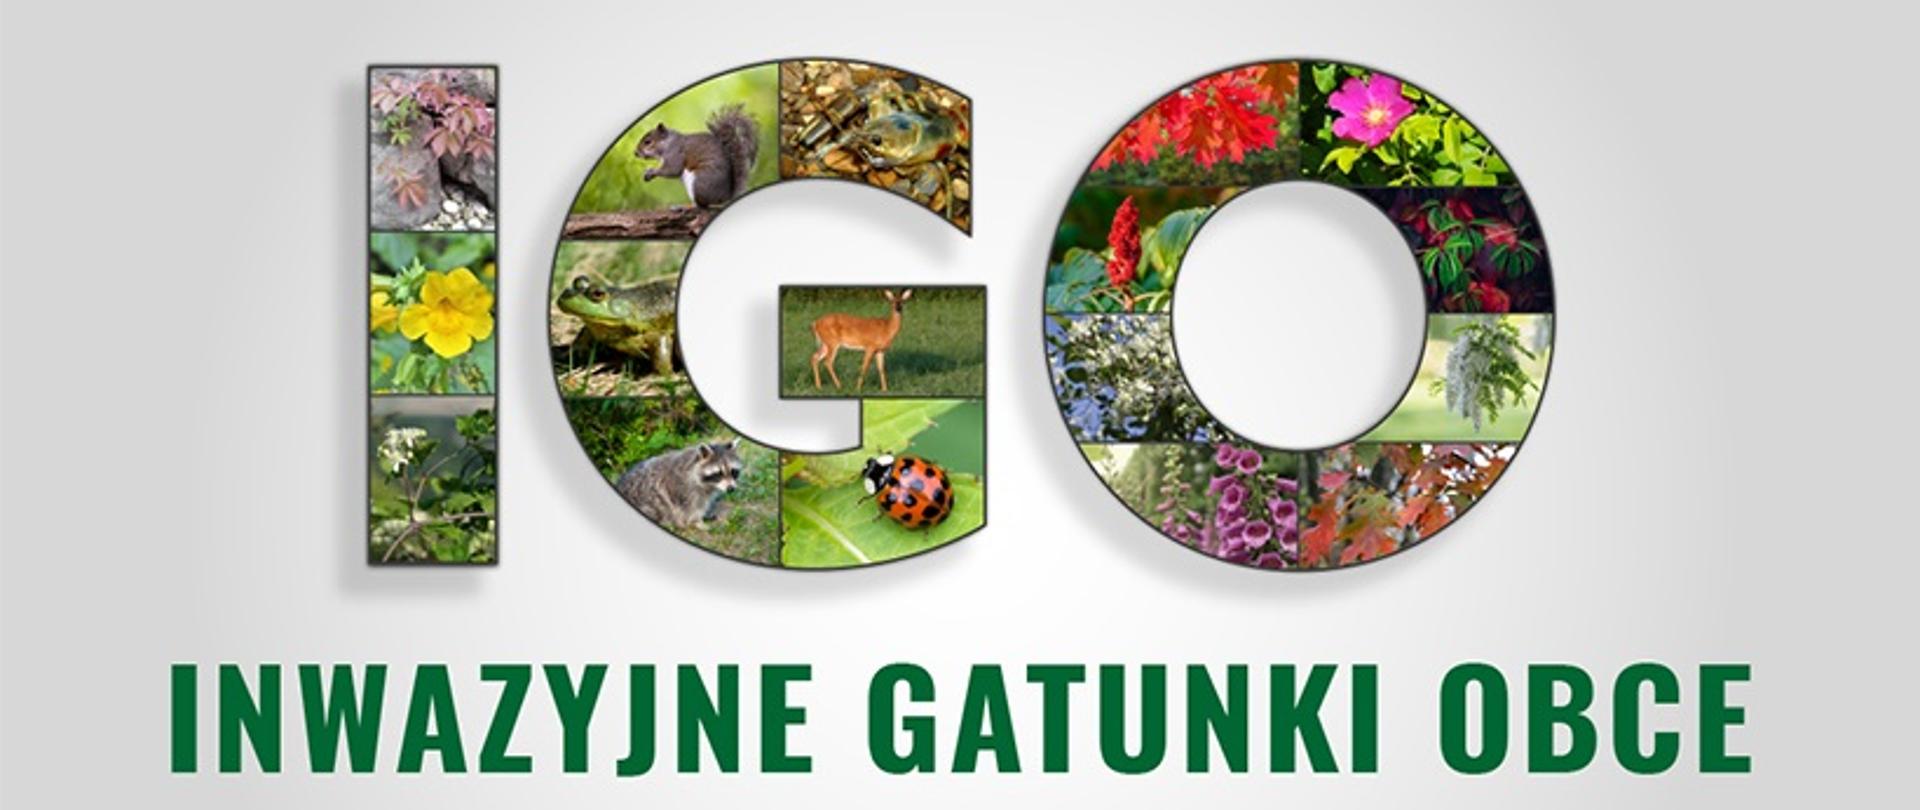 Na środku planszy napis IGO ułożony z kolorowych zdjęć roślin i zwierząt.
Pod spodem zielony, rozwinięty skrót: Inwazyjne Gatunki Obce. 